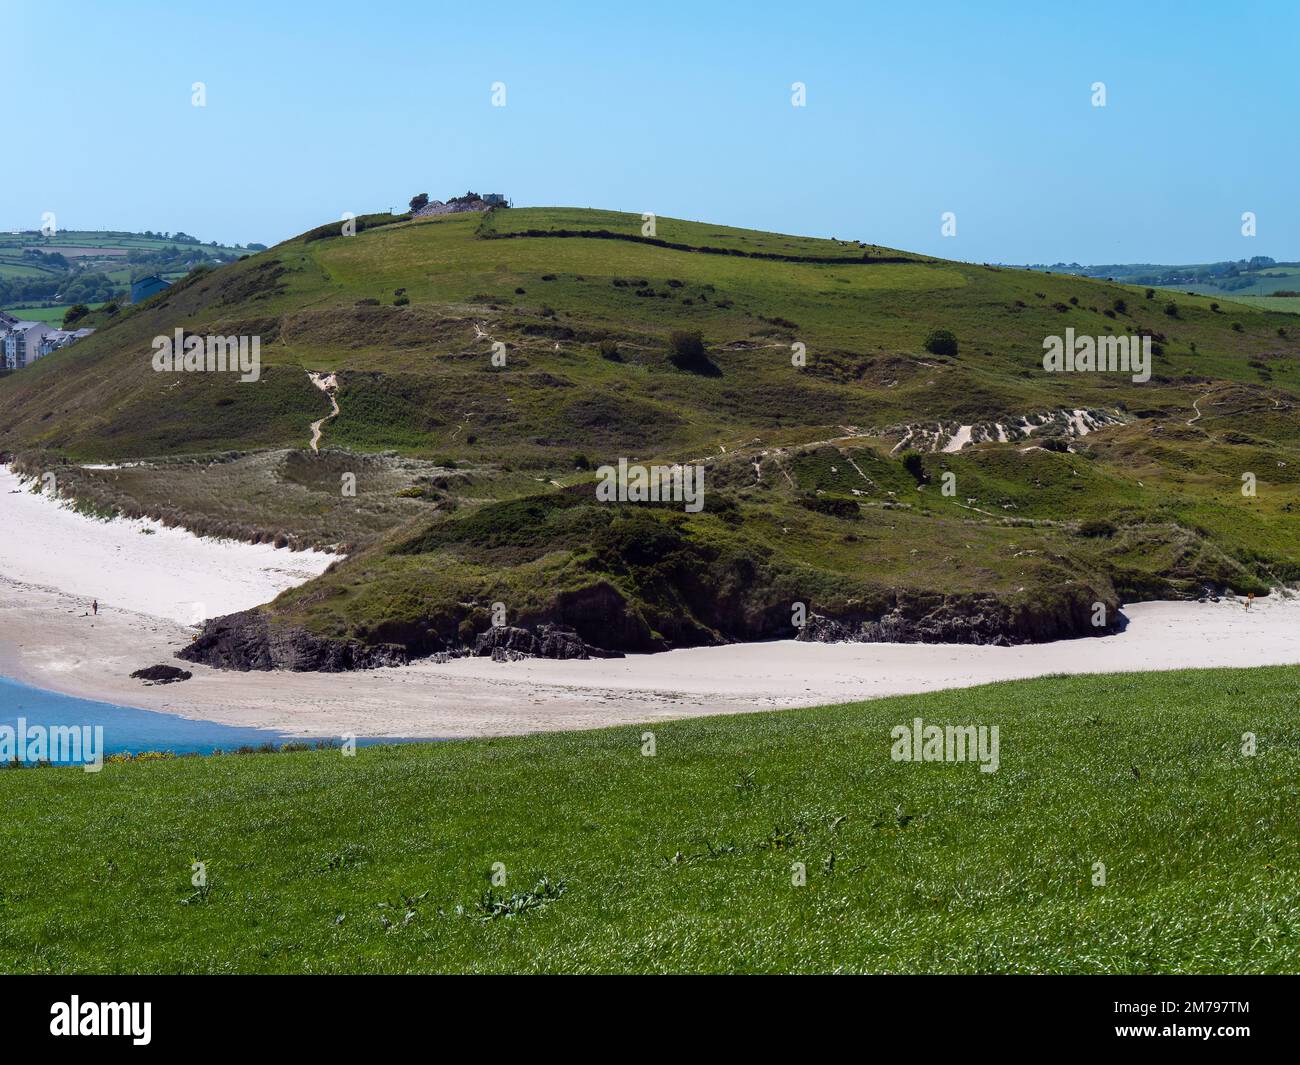 Dunes couvertes de plantes sur la côte de l'Irlande lors d'une journée de printemps ensoleillée. Collines vertes. Paysage irlandais en bord de mer. La beauté de la nature. Banque D'Images